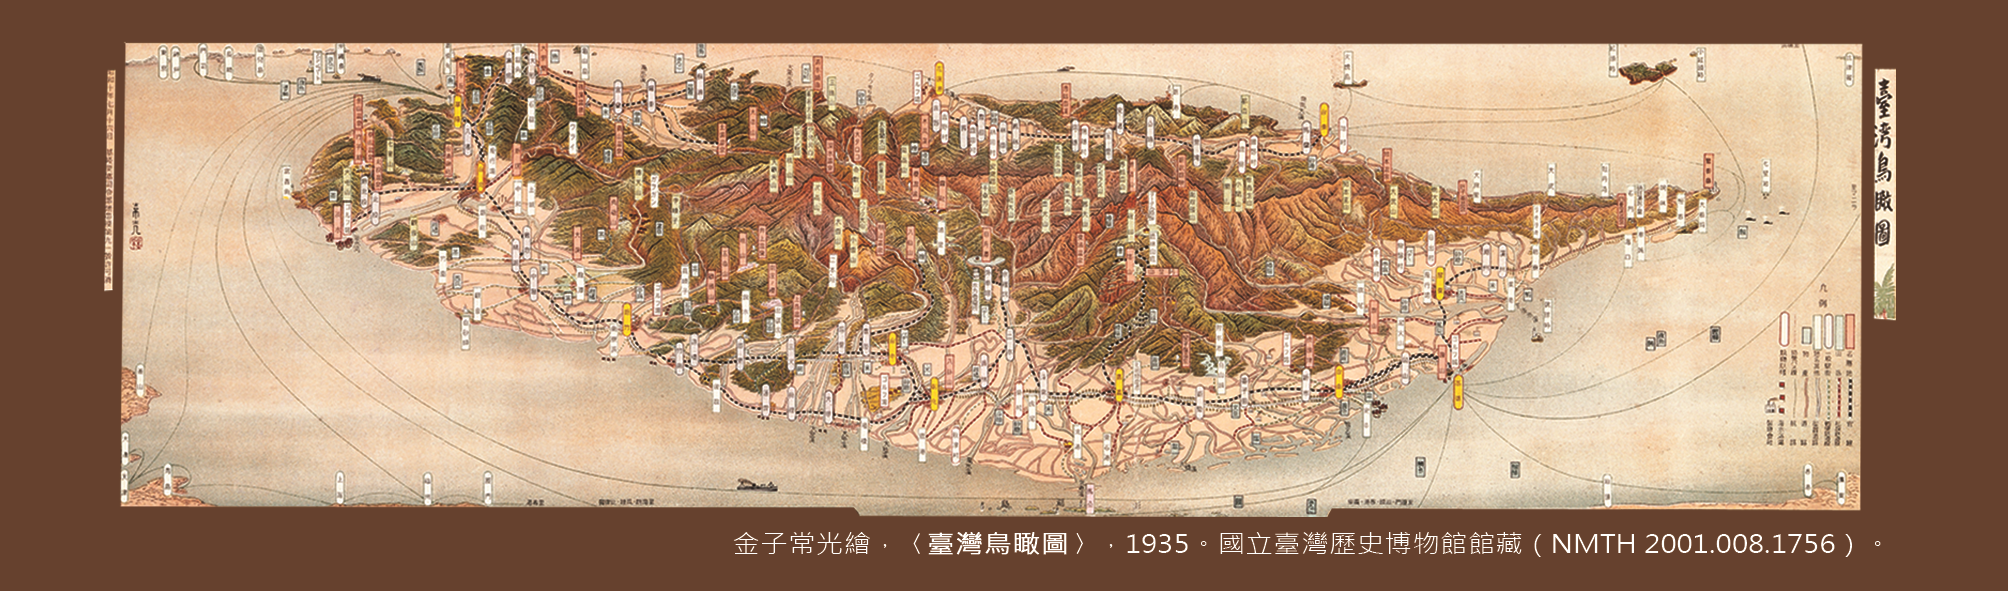 地圖書籤4(1935年-臺灣)-正